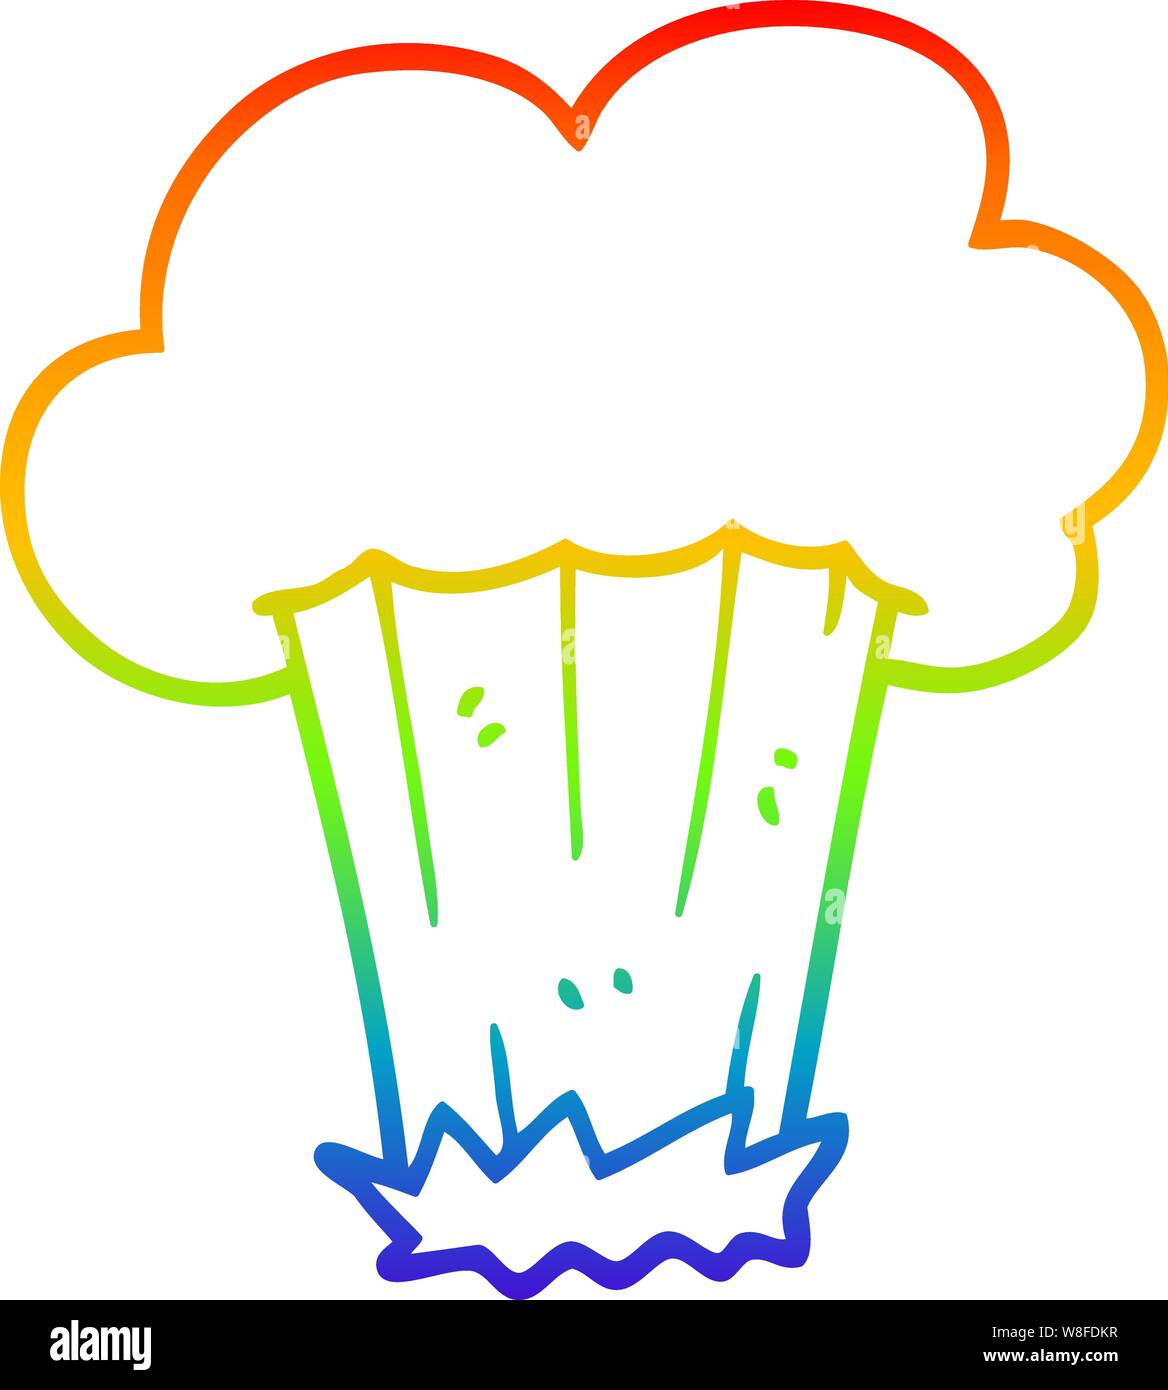 Rainbow linea di sfumatura di disegno di un cartone animato big bang  Immagine e Vettoriale - Alamy